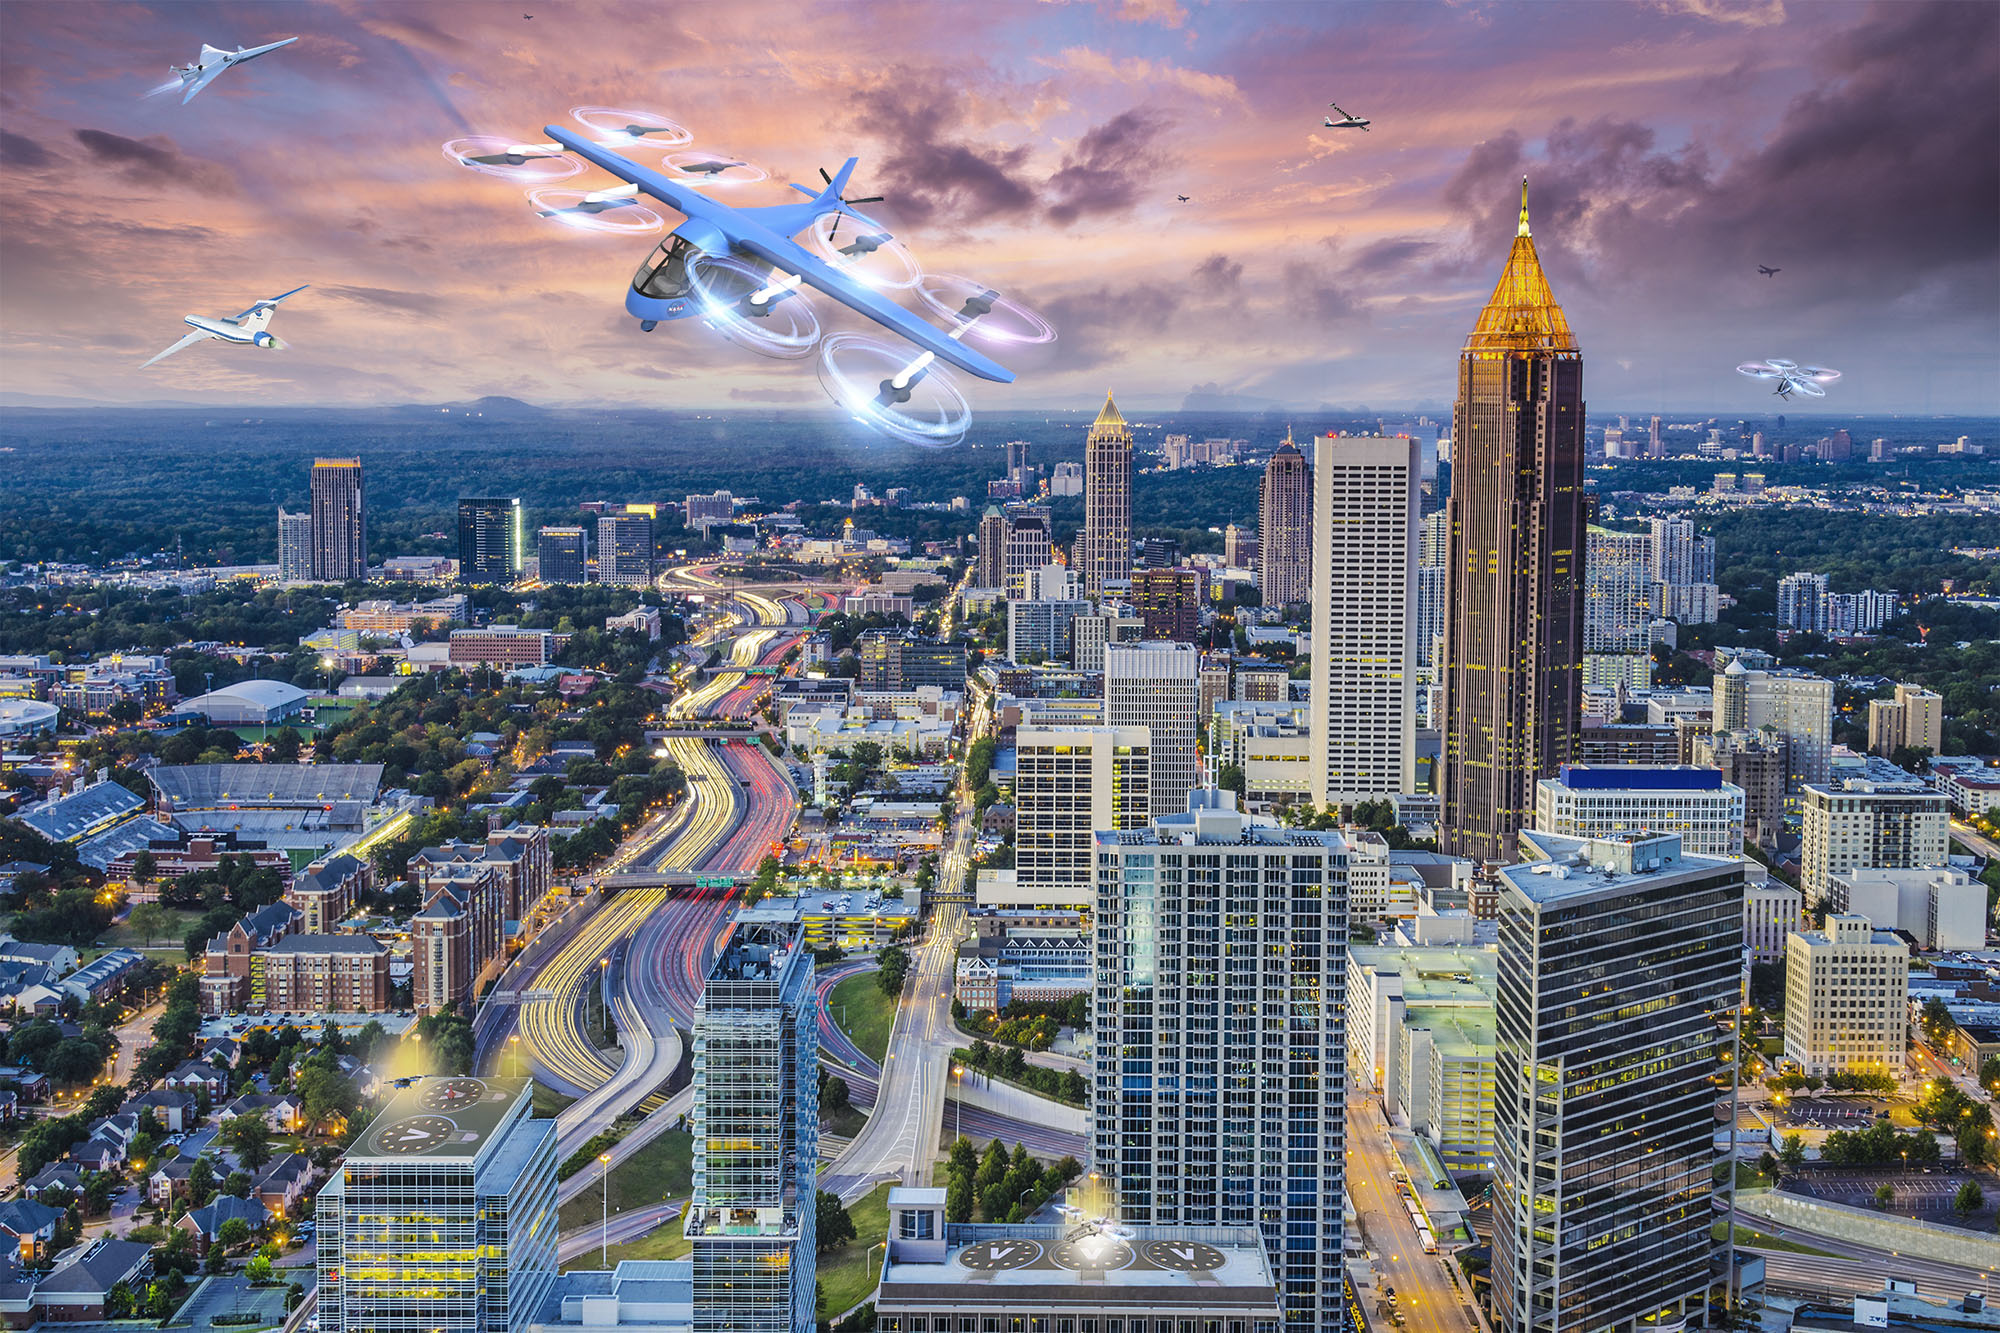 无人机和飞行汽车在亚特兰大市中心嗡嗡作响，这是美国宇航局推测项目的一部分